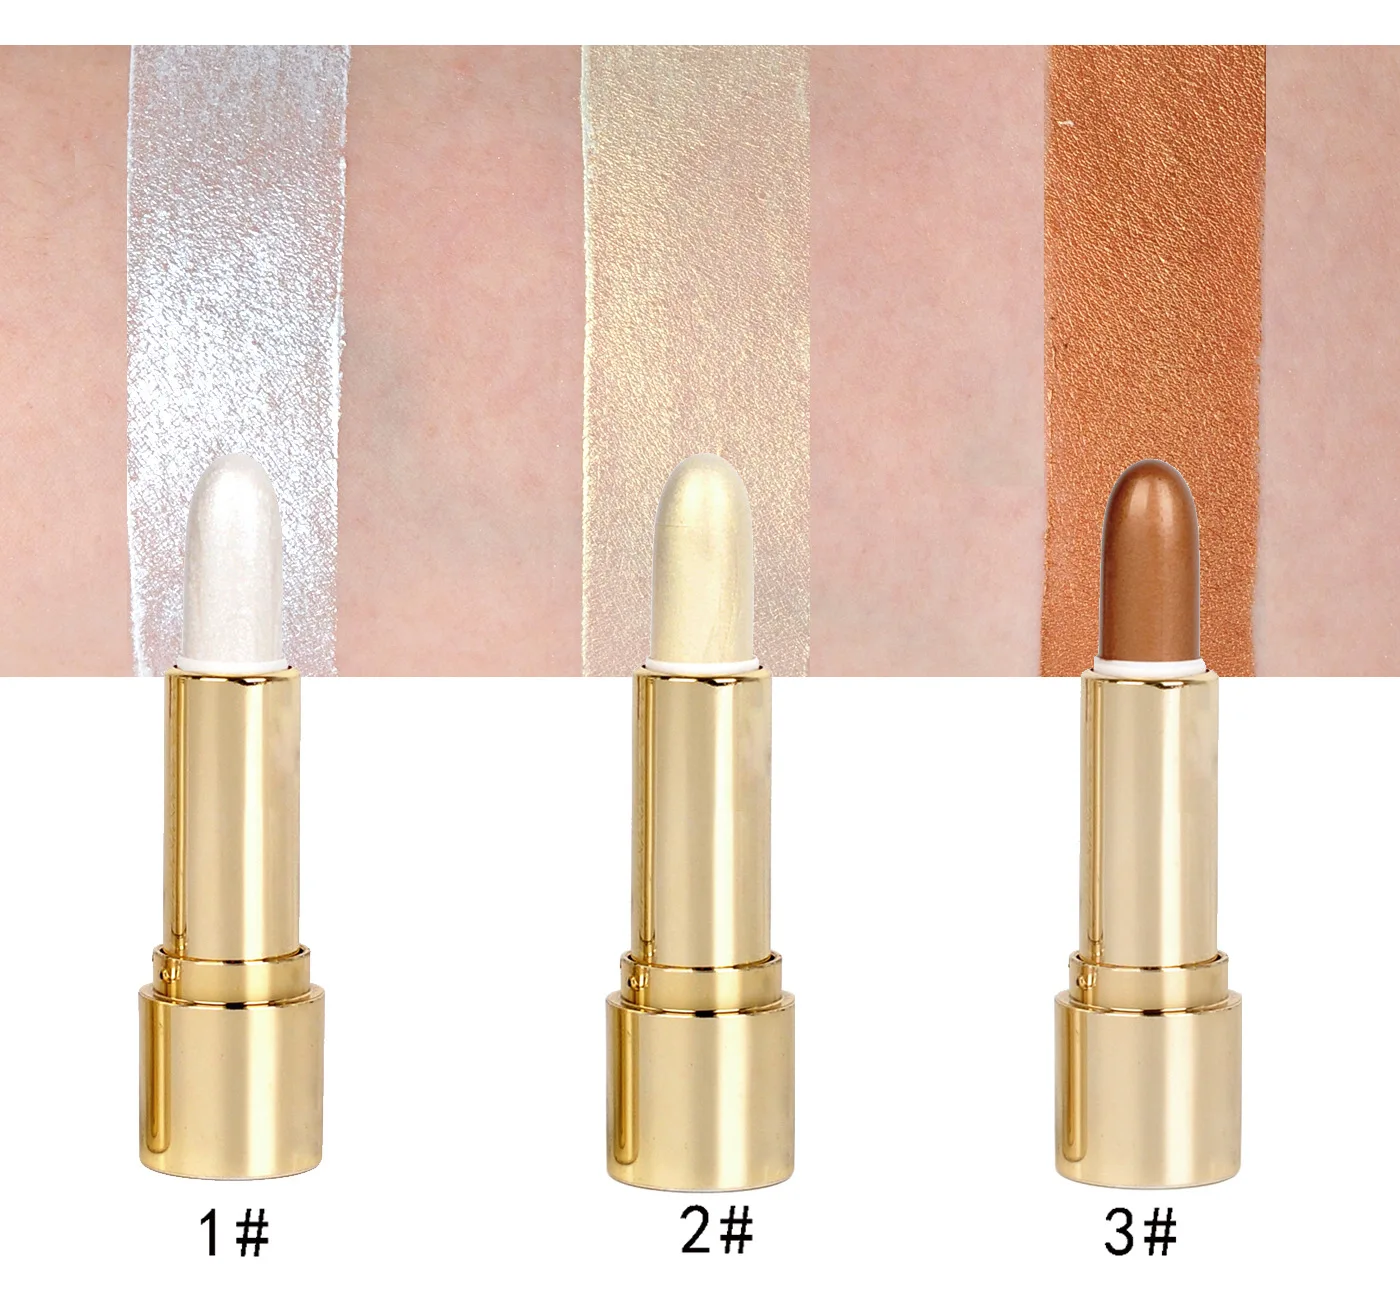 Хайлайтер палочка крем маникюрные бронзаторы осветитель хайлайтер маркеры Maquillage длительное время осветляет косметику красоты